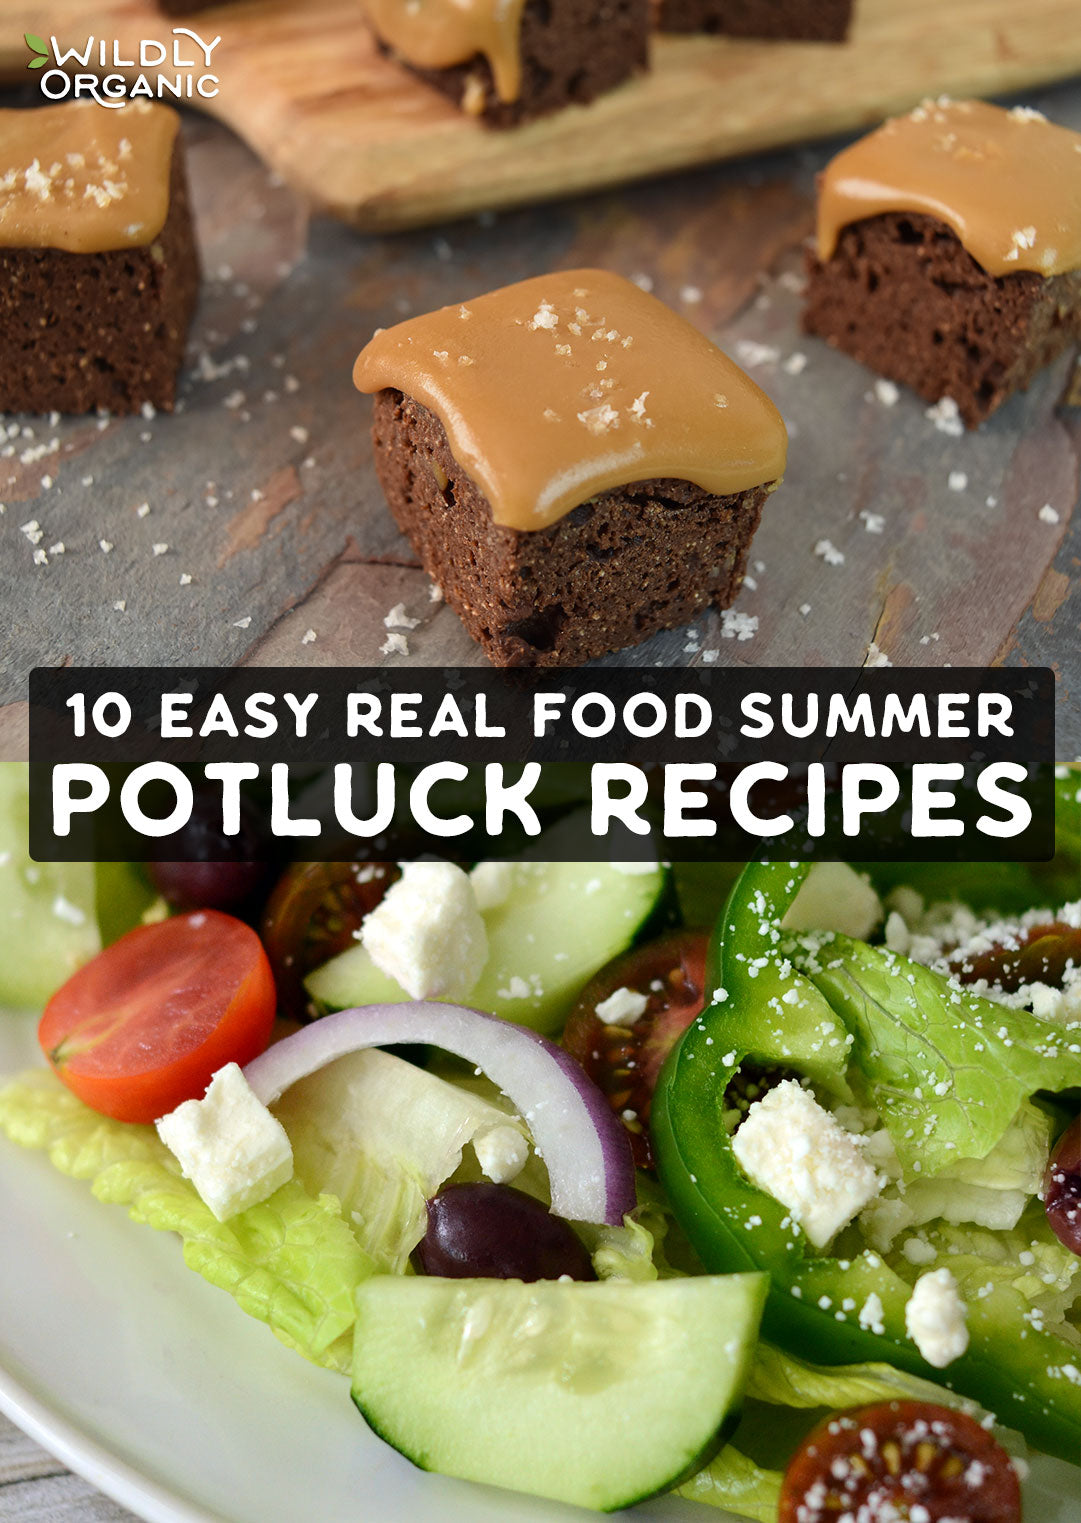 https://cdn.shopify.com/s/files/1/1144/9326/files/10-easy-real-food-summer-potluck-recipes.jpg